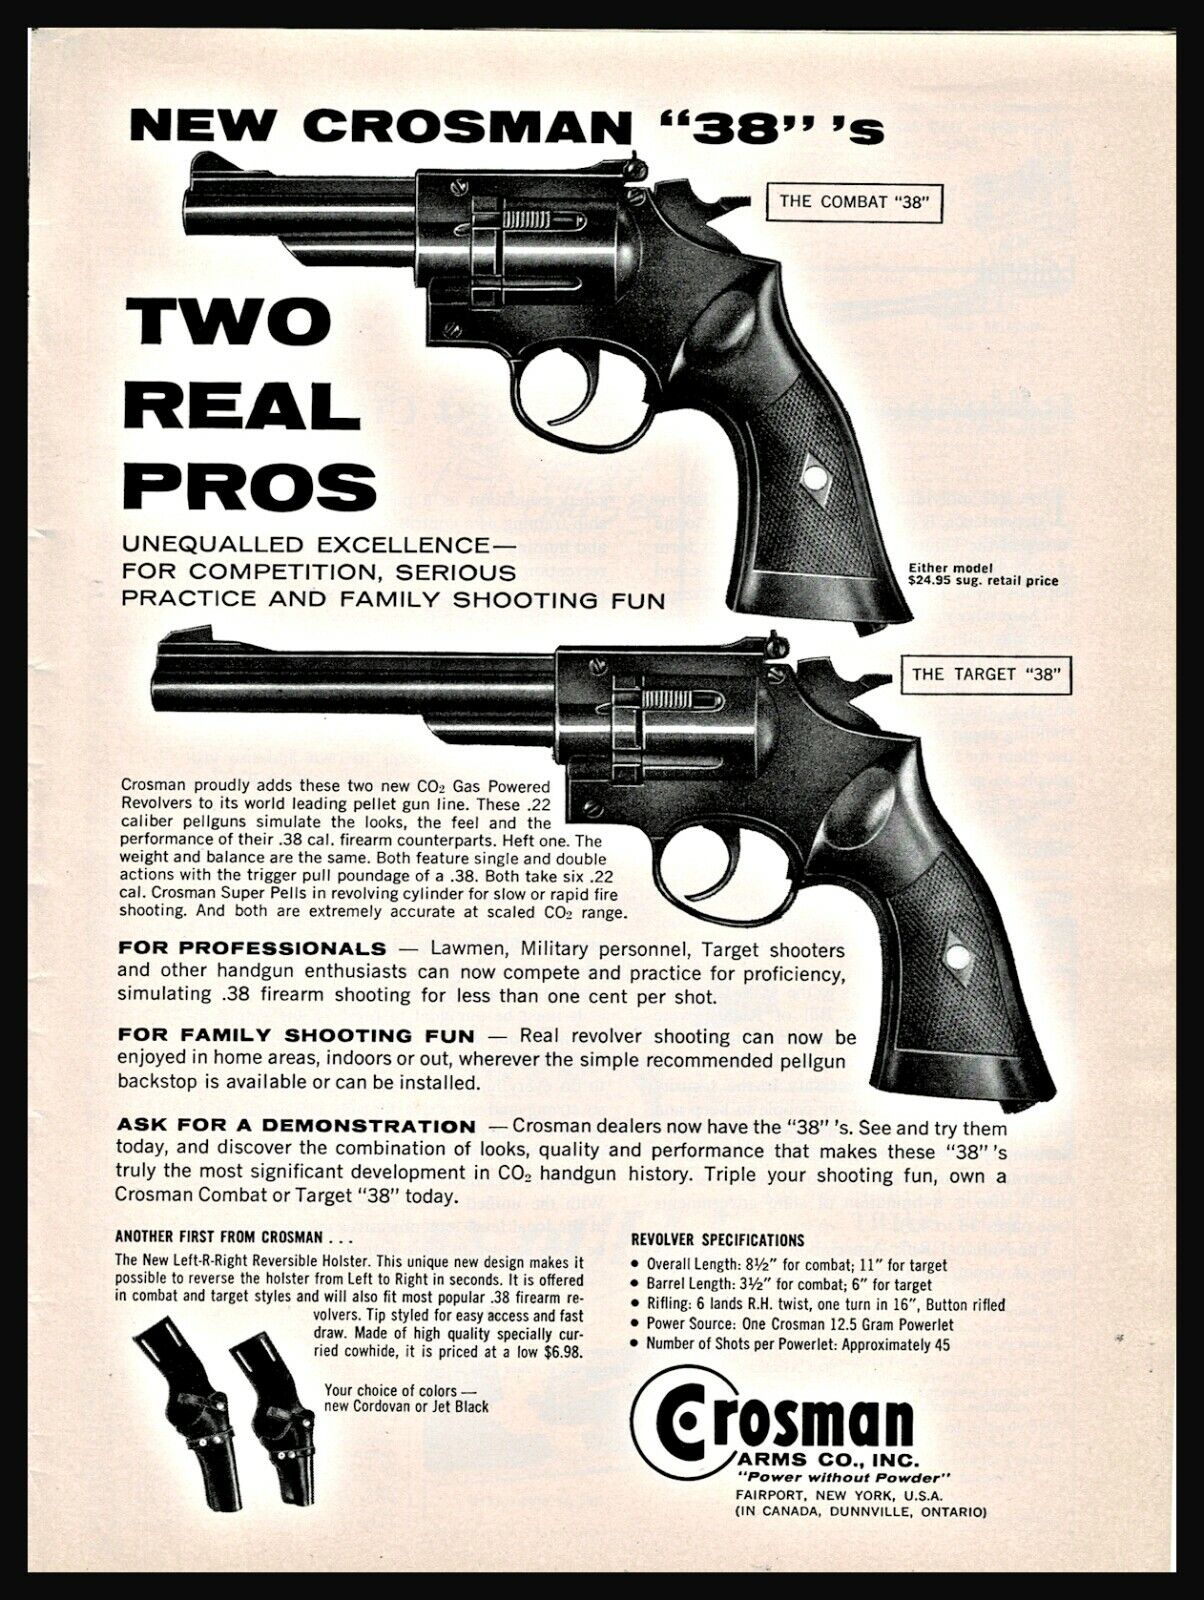 1964 CROSMAN Combat and Target 38 CO2 P_ellet Gun Revolver PRINT AD